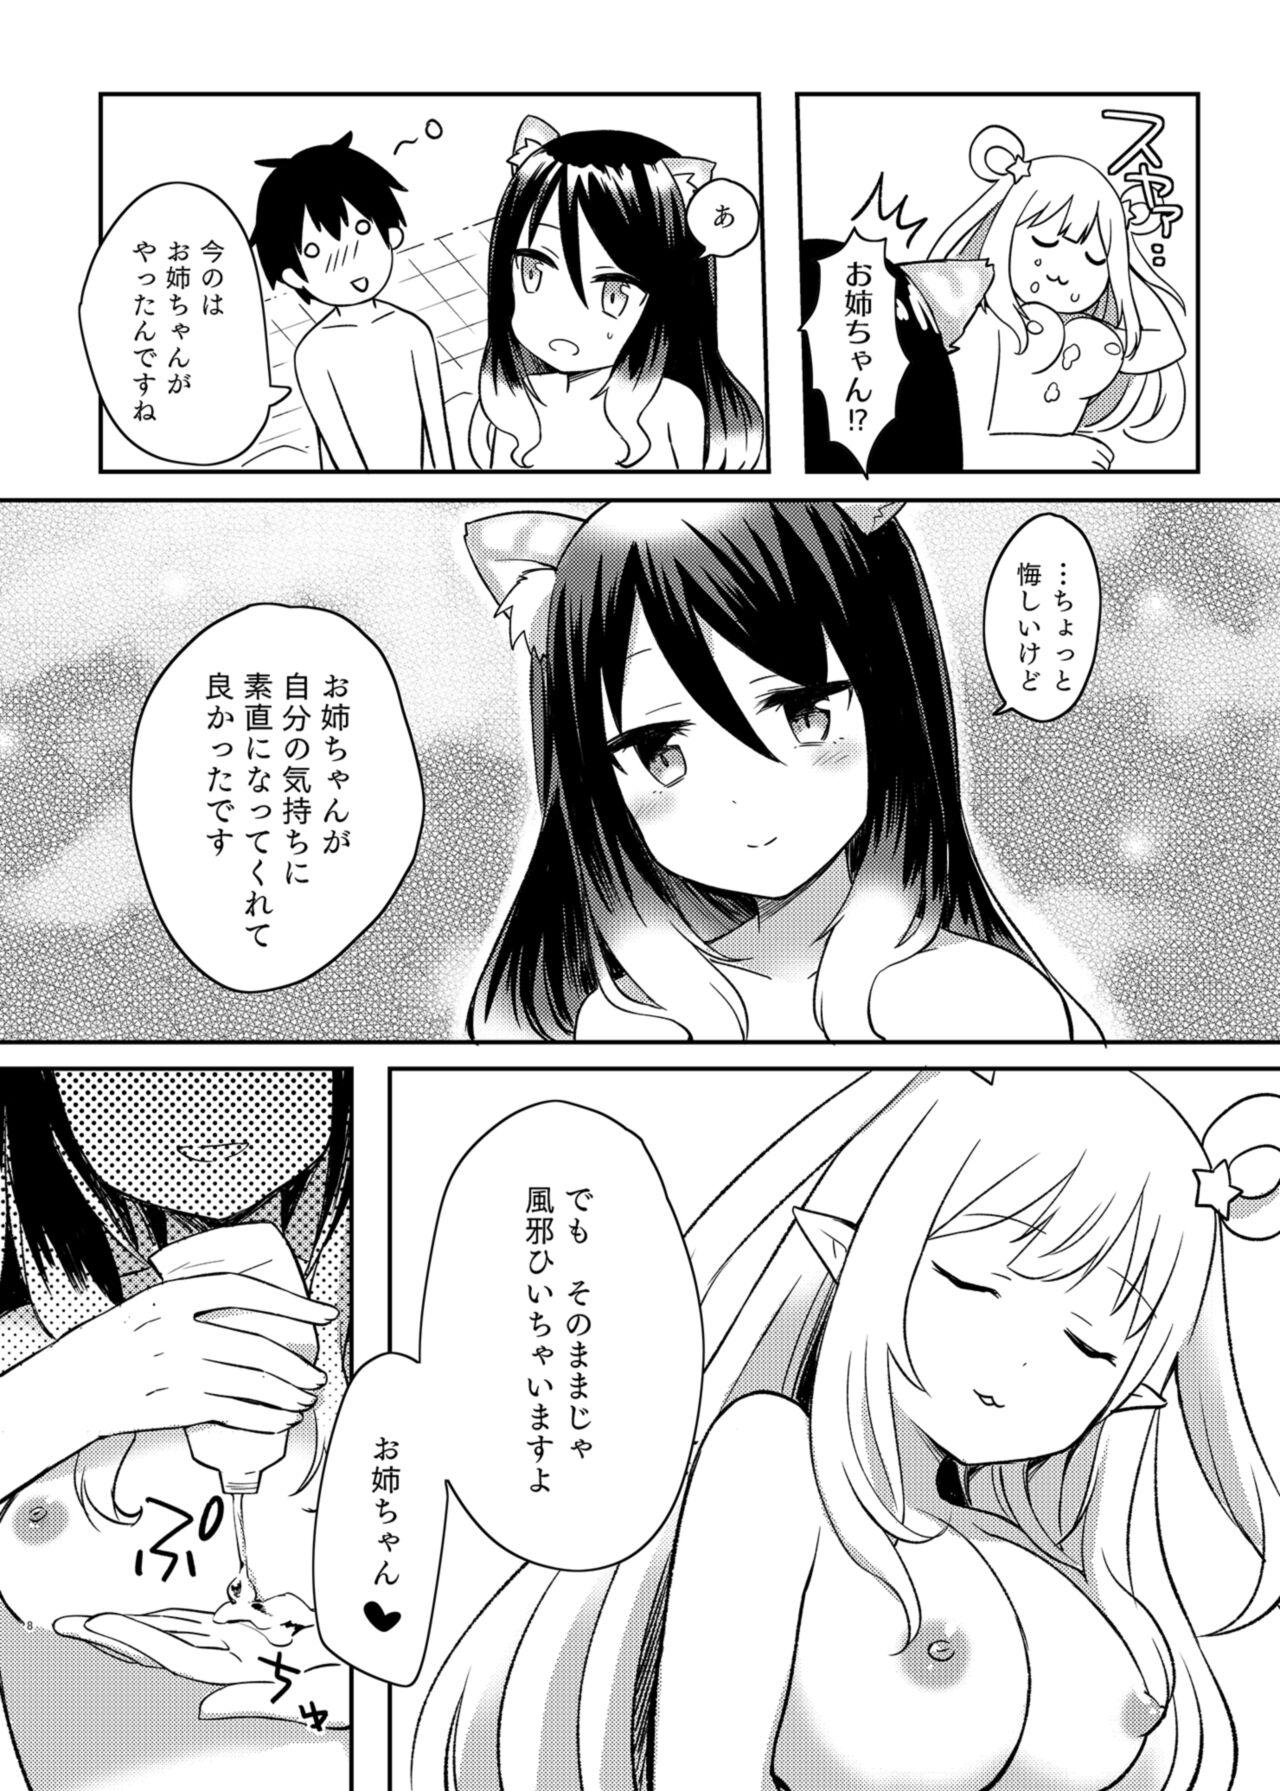 Oldman Hatsune to Shiori no Yukemuri Daisakusen - Princess connect Sextape - Page 8